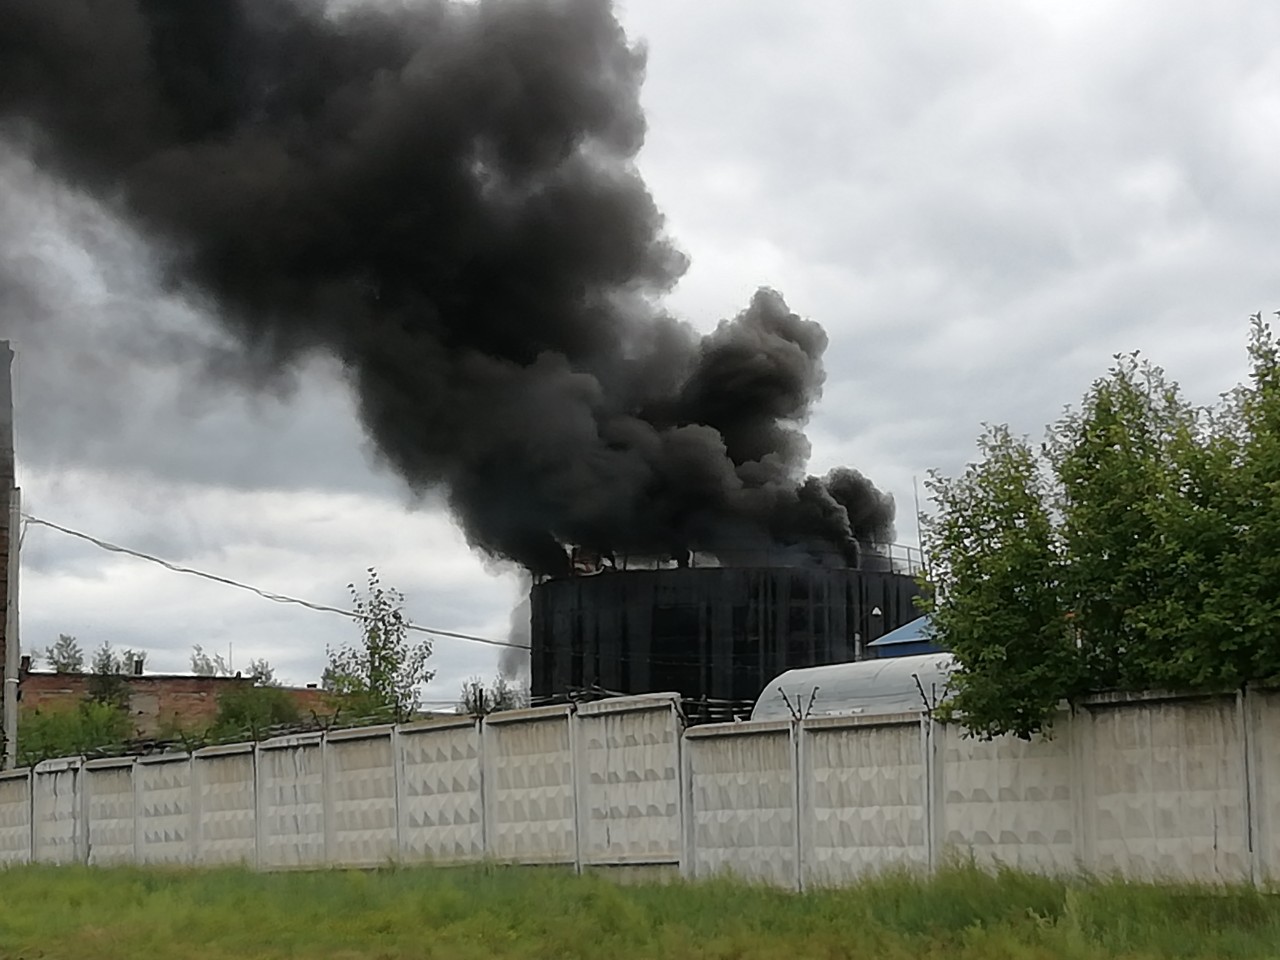 Сегодня на территории военного завода в Песчанке горела емкость с мазутом. Неподалеку расположены склады с боеприпасами "Брежневского полка" и ДОСы мирных жителей. К счастью, не рвануло.